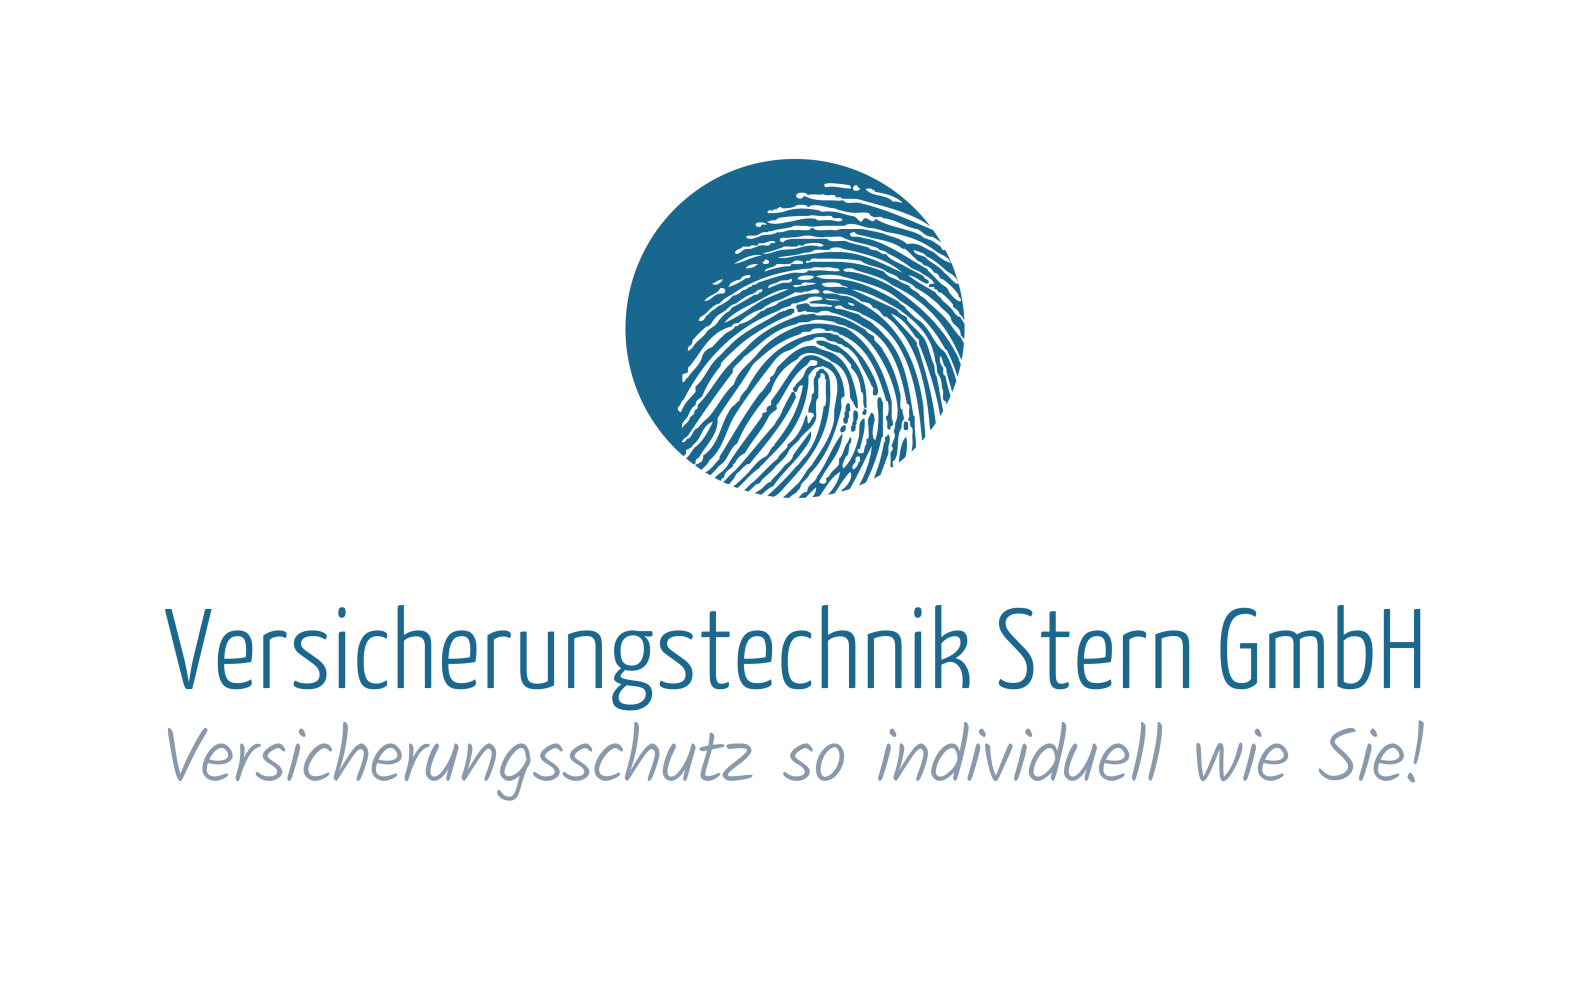 Versicherungstechnik Stern GmbH Headerbild